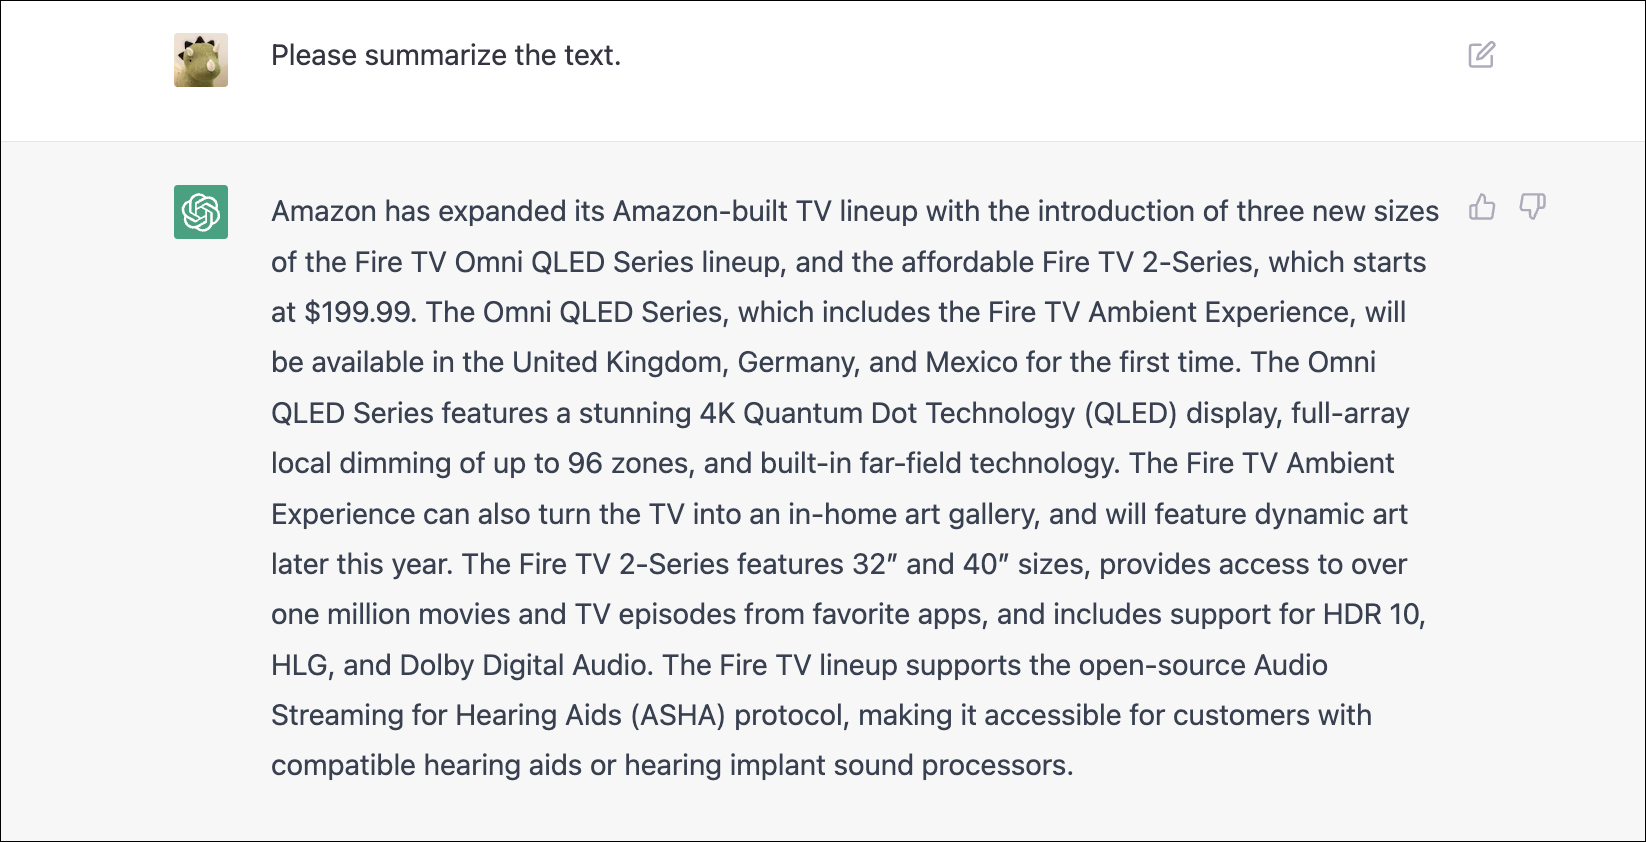 ซีแอตเทิล--(บิสิเนส ไวร์)---วันนี้ Amazon (NASDAQ: AMZN) ประกาศขยายตระกูลทีวีที่ Amazon สร้างขึ้น กลุ่มผลิตภัณฑ์ทีวีที่สร้างโดย Amazon จะรวมผลิตภัณฑ์ Fire TV Omni QLED Series สามขนาดใหม่ ซึ่งรวมถึง Fire TV Ambient Experience; และแนะนำ Fire TV 2-Series ราคาไม่แพงซึ่งเริ่มต้นเพียง $199.99 Amazon ยังเปิดตัวทีวีที่ผลิตโดย Amazon ในประเทศต่างๆ มากขึ้น โดยนำ Omni QLED Series, Fire TV 4-Series และ Fire TV 2-Series ใหม่มาสู่สหราชอาณาจักร เยอรมนี และเม็กซิโกเป็นครั้งแรก (รูปภาพ: Business Wire) (รูปภาพ: Business Wire)